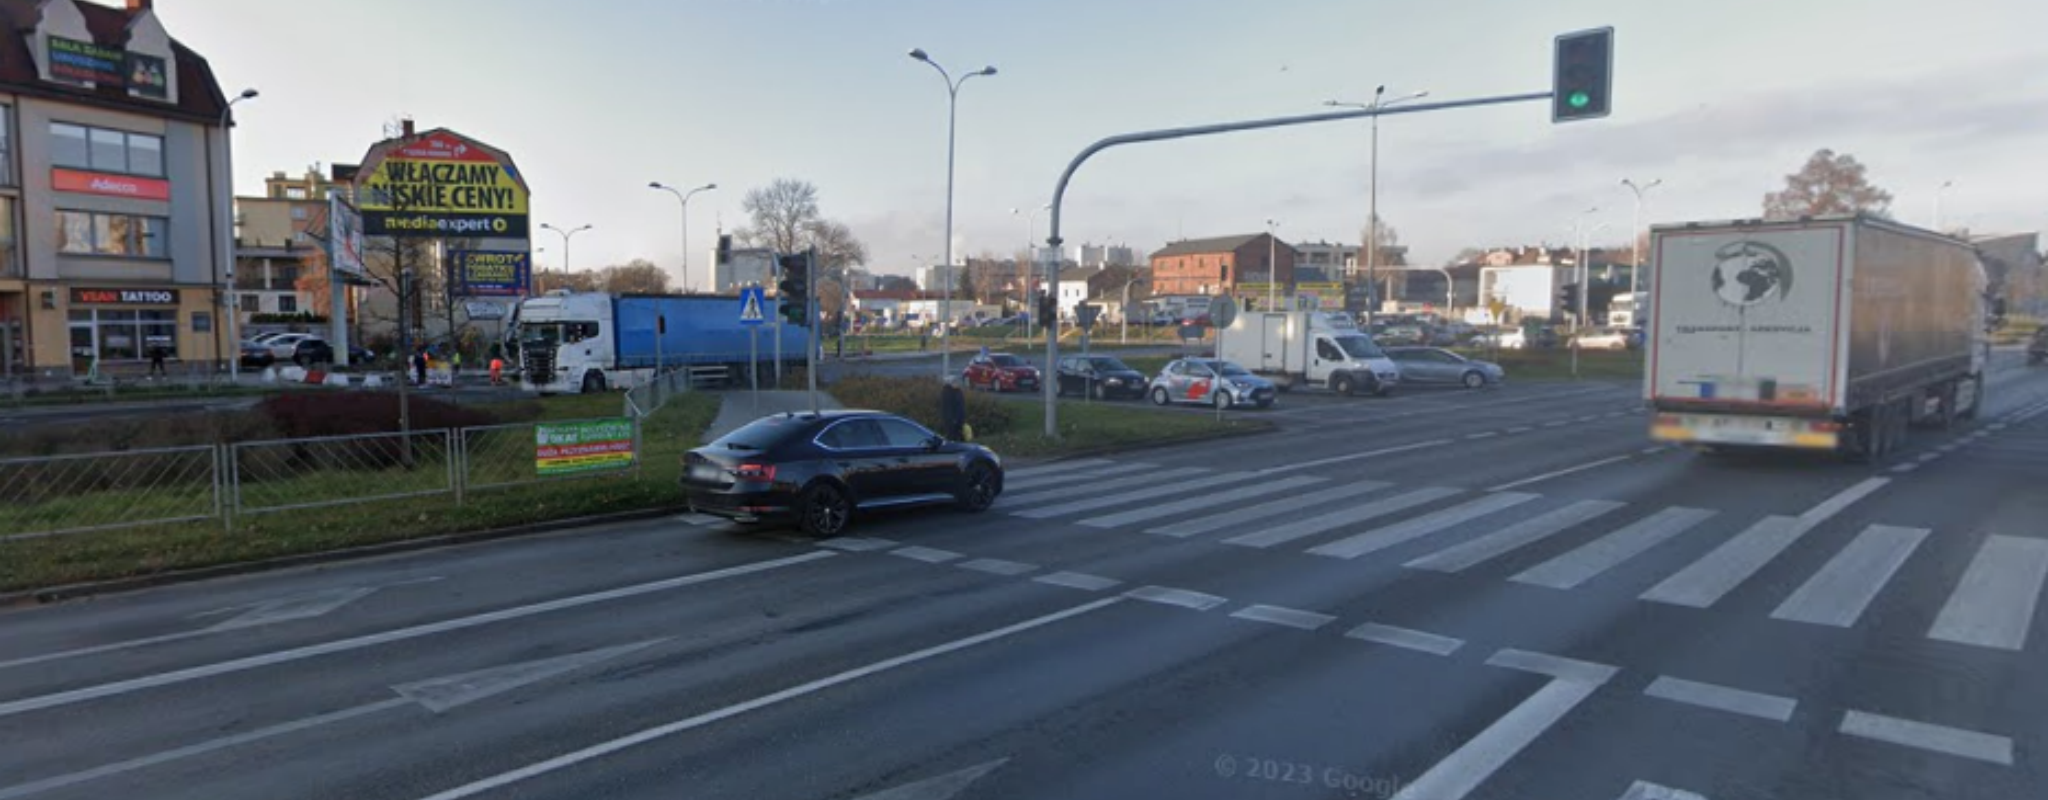 powierzchnia reklamowa w Kielcach